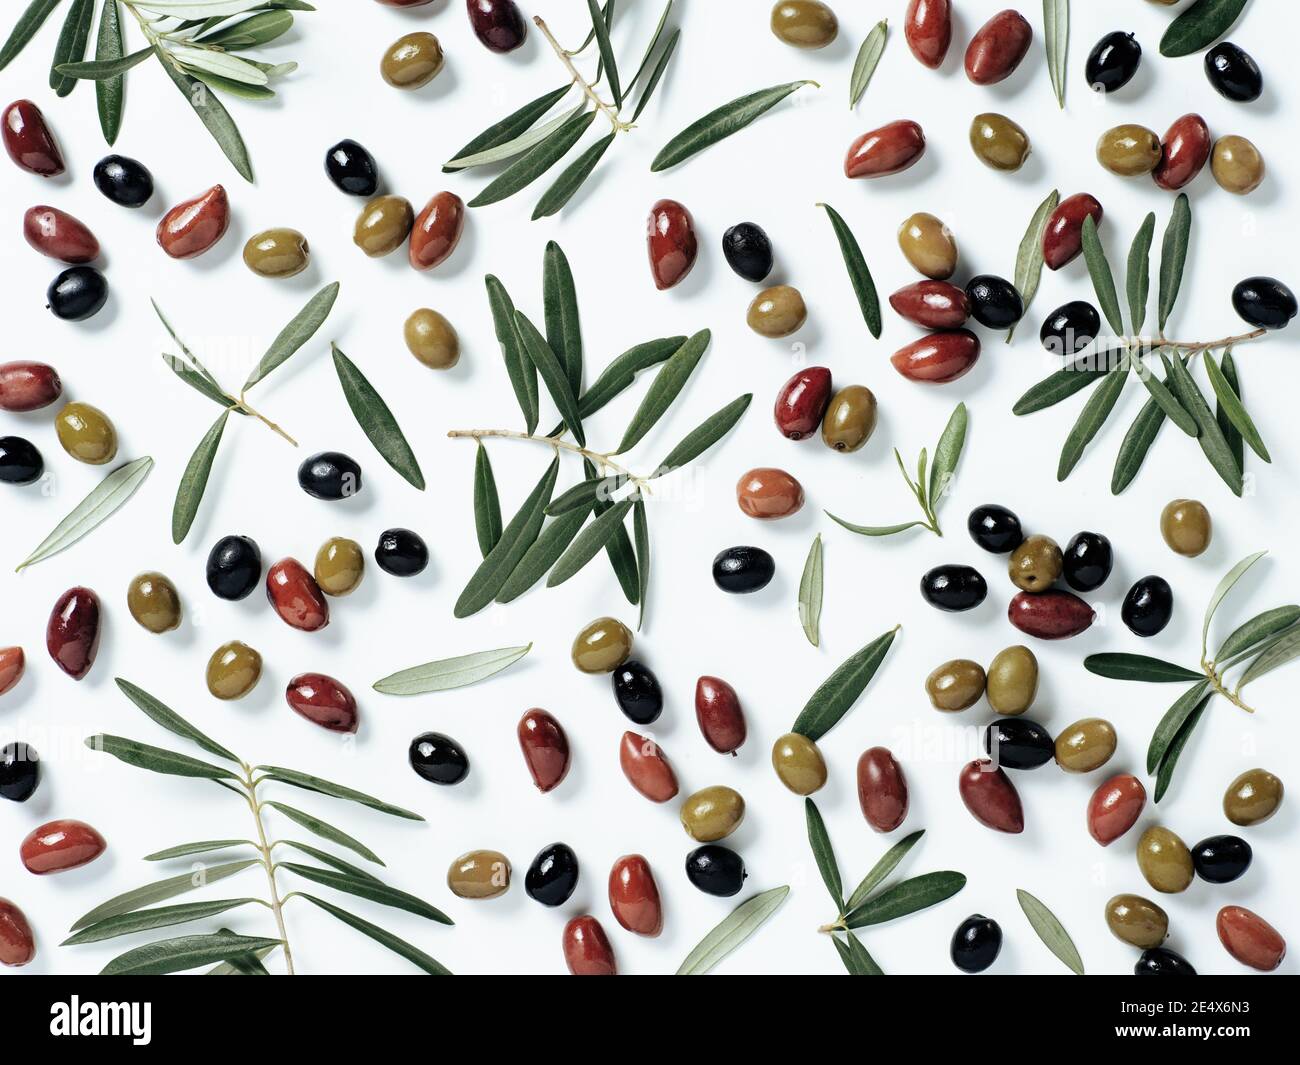 Schönes Muster mit grünen, schwarzen und roten Oliven und Oliven Baum Blätter und Zweige auf weißem Hintergrund. Oliven und Zweige als Muster, Draufsicht oder Flachlage mischen. Stockfoto